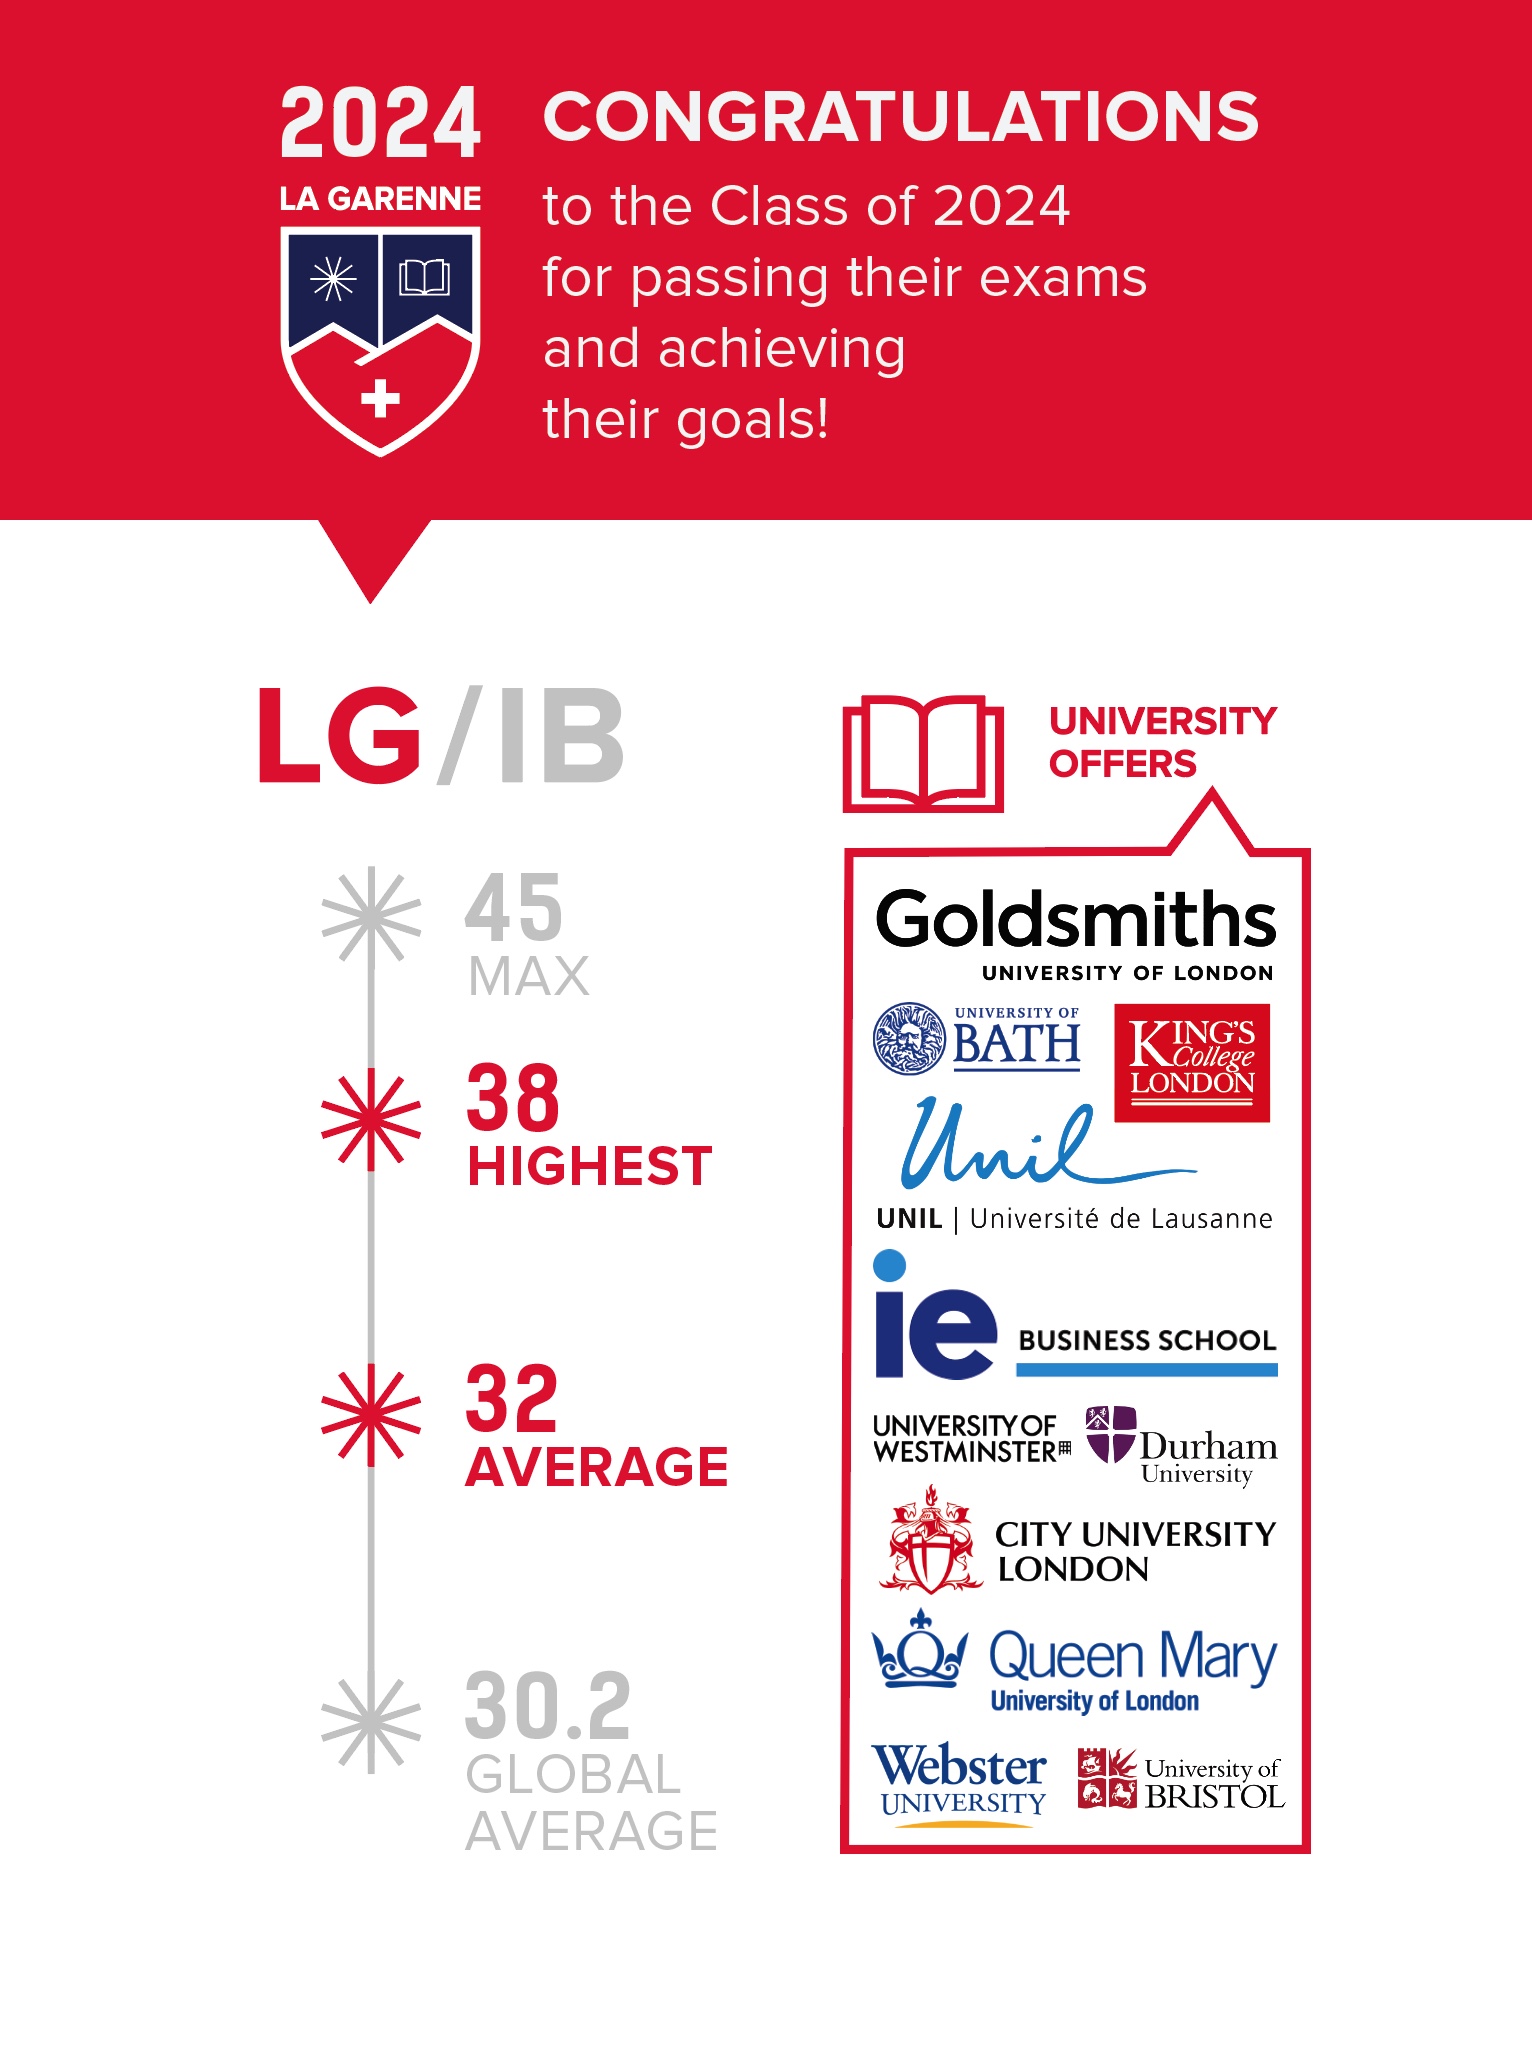 LG IB results 24